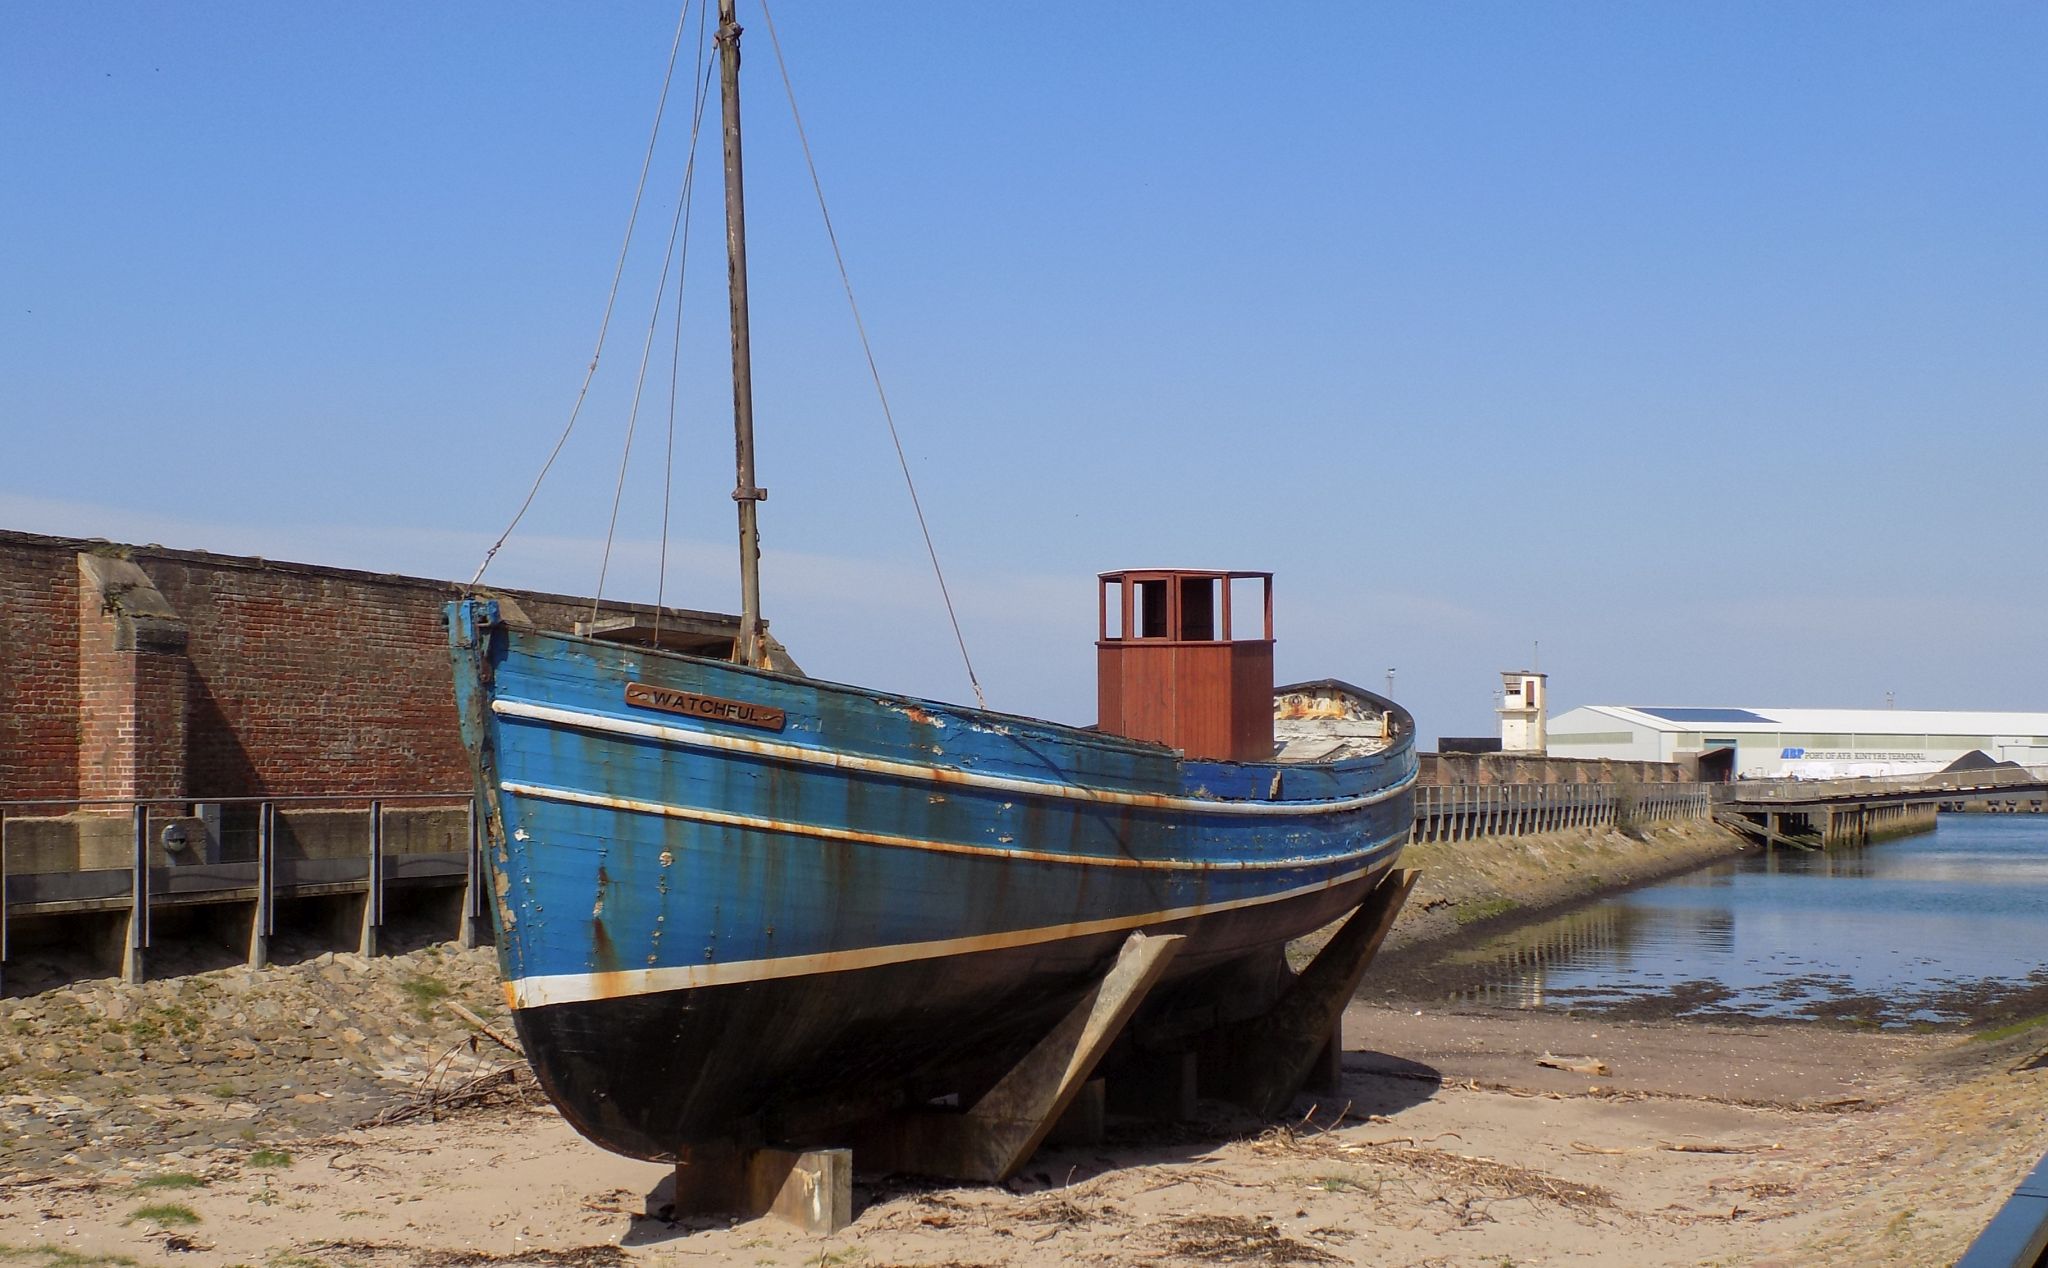 Old Fishing Boat at Ayr dock